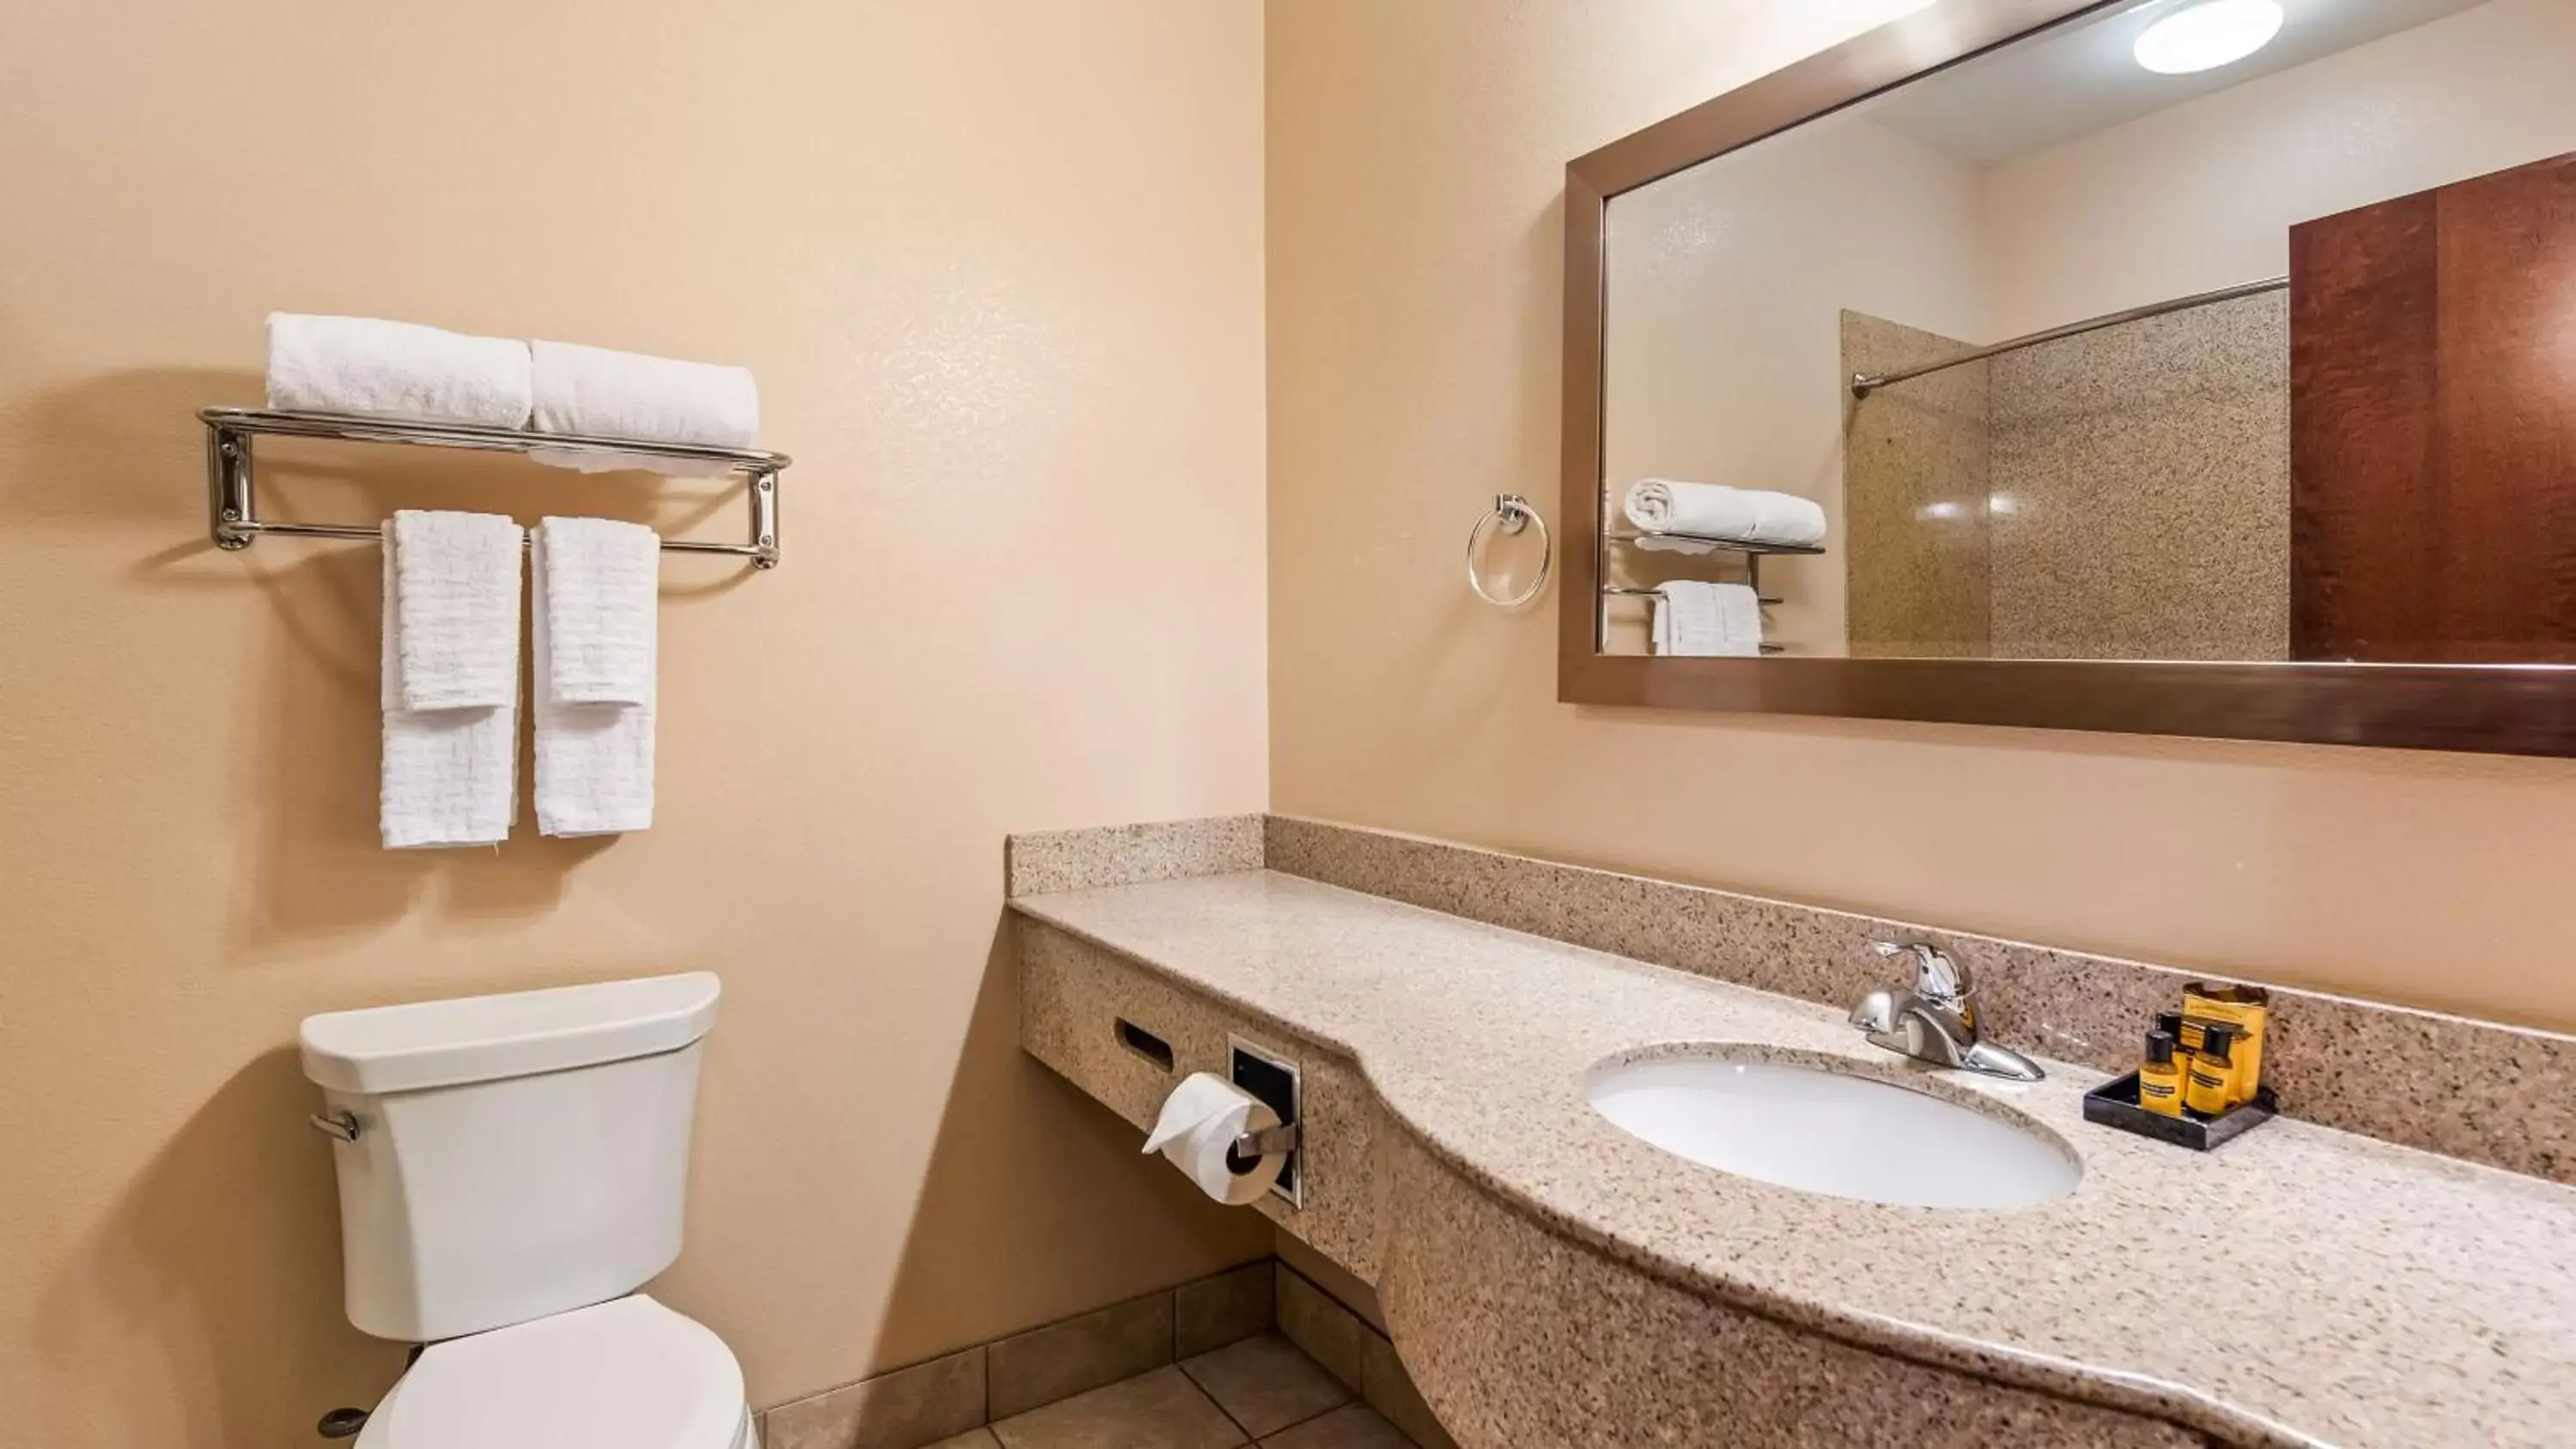 Toilet, Bathroom in Best Western Plus Seminole Hotel & Suites